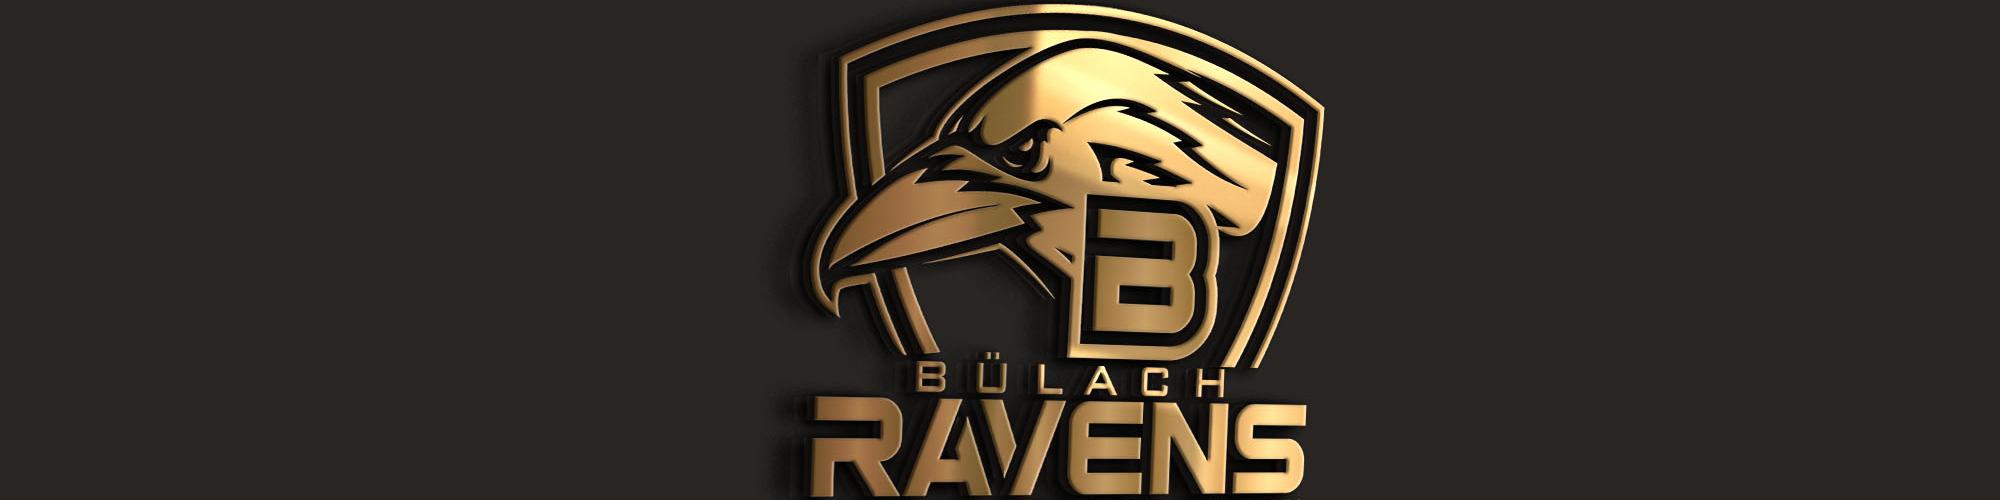 Bülach Ravens